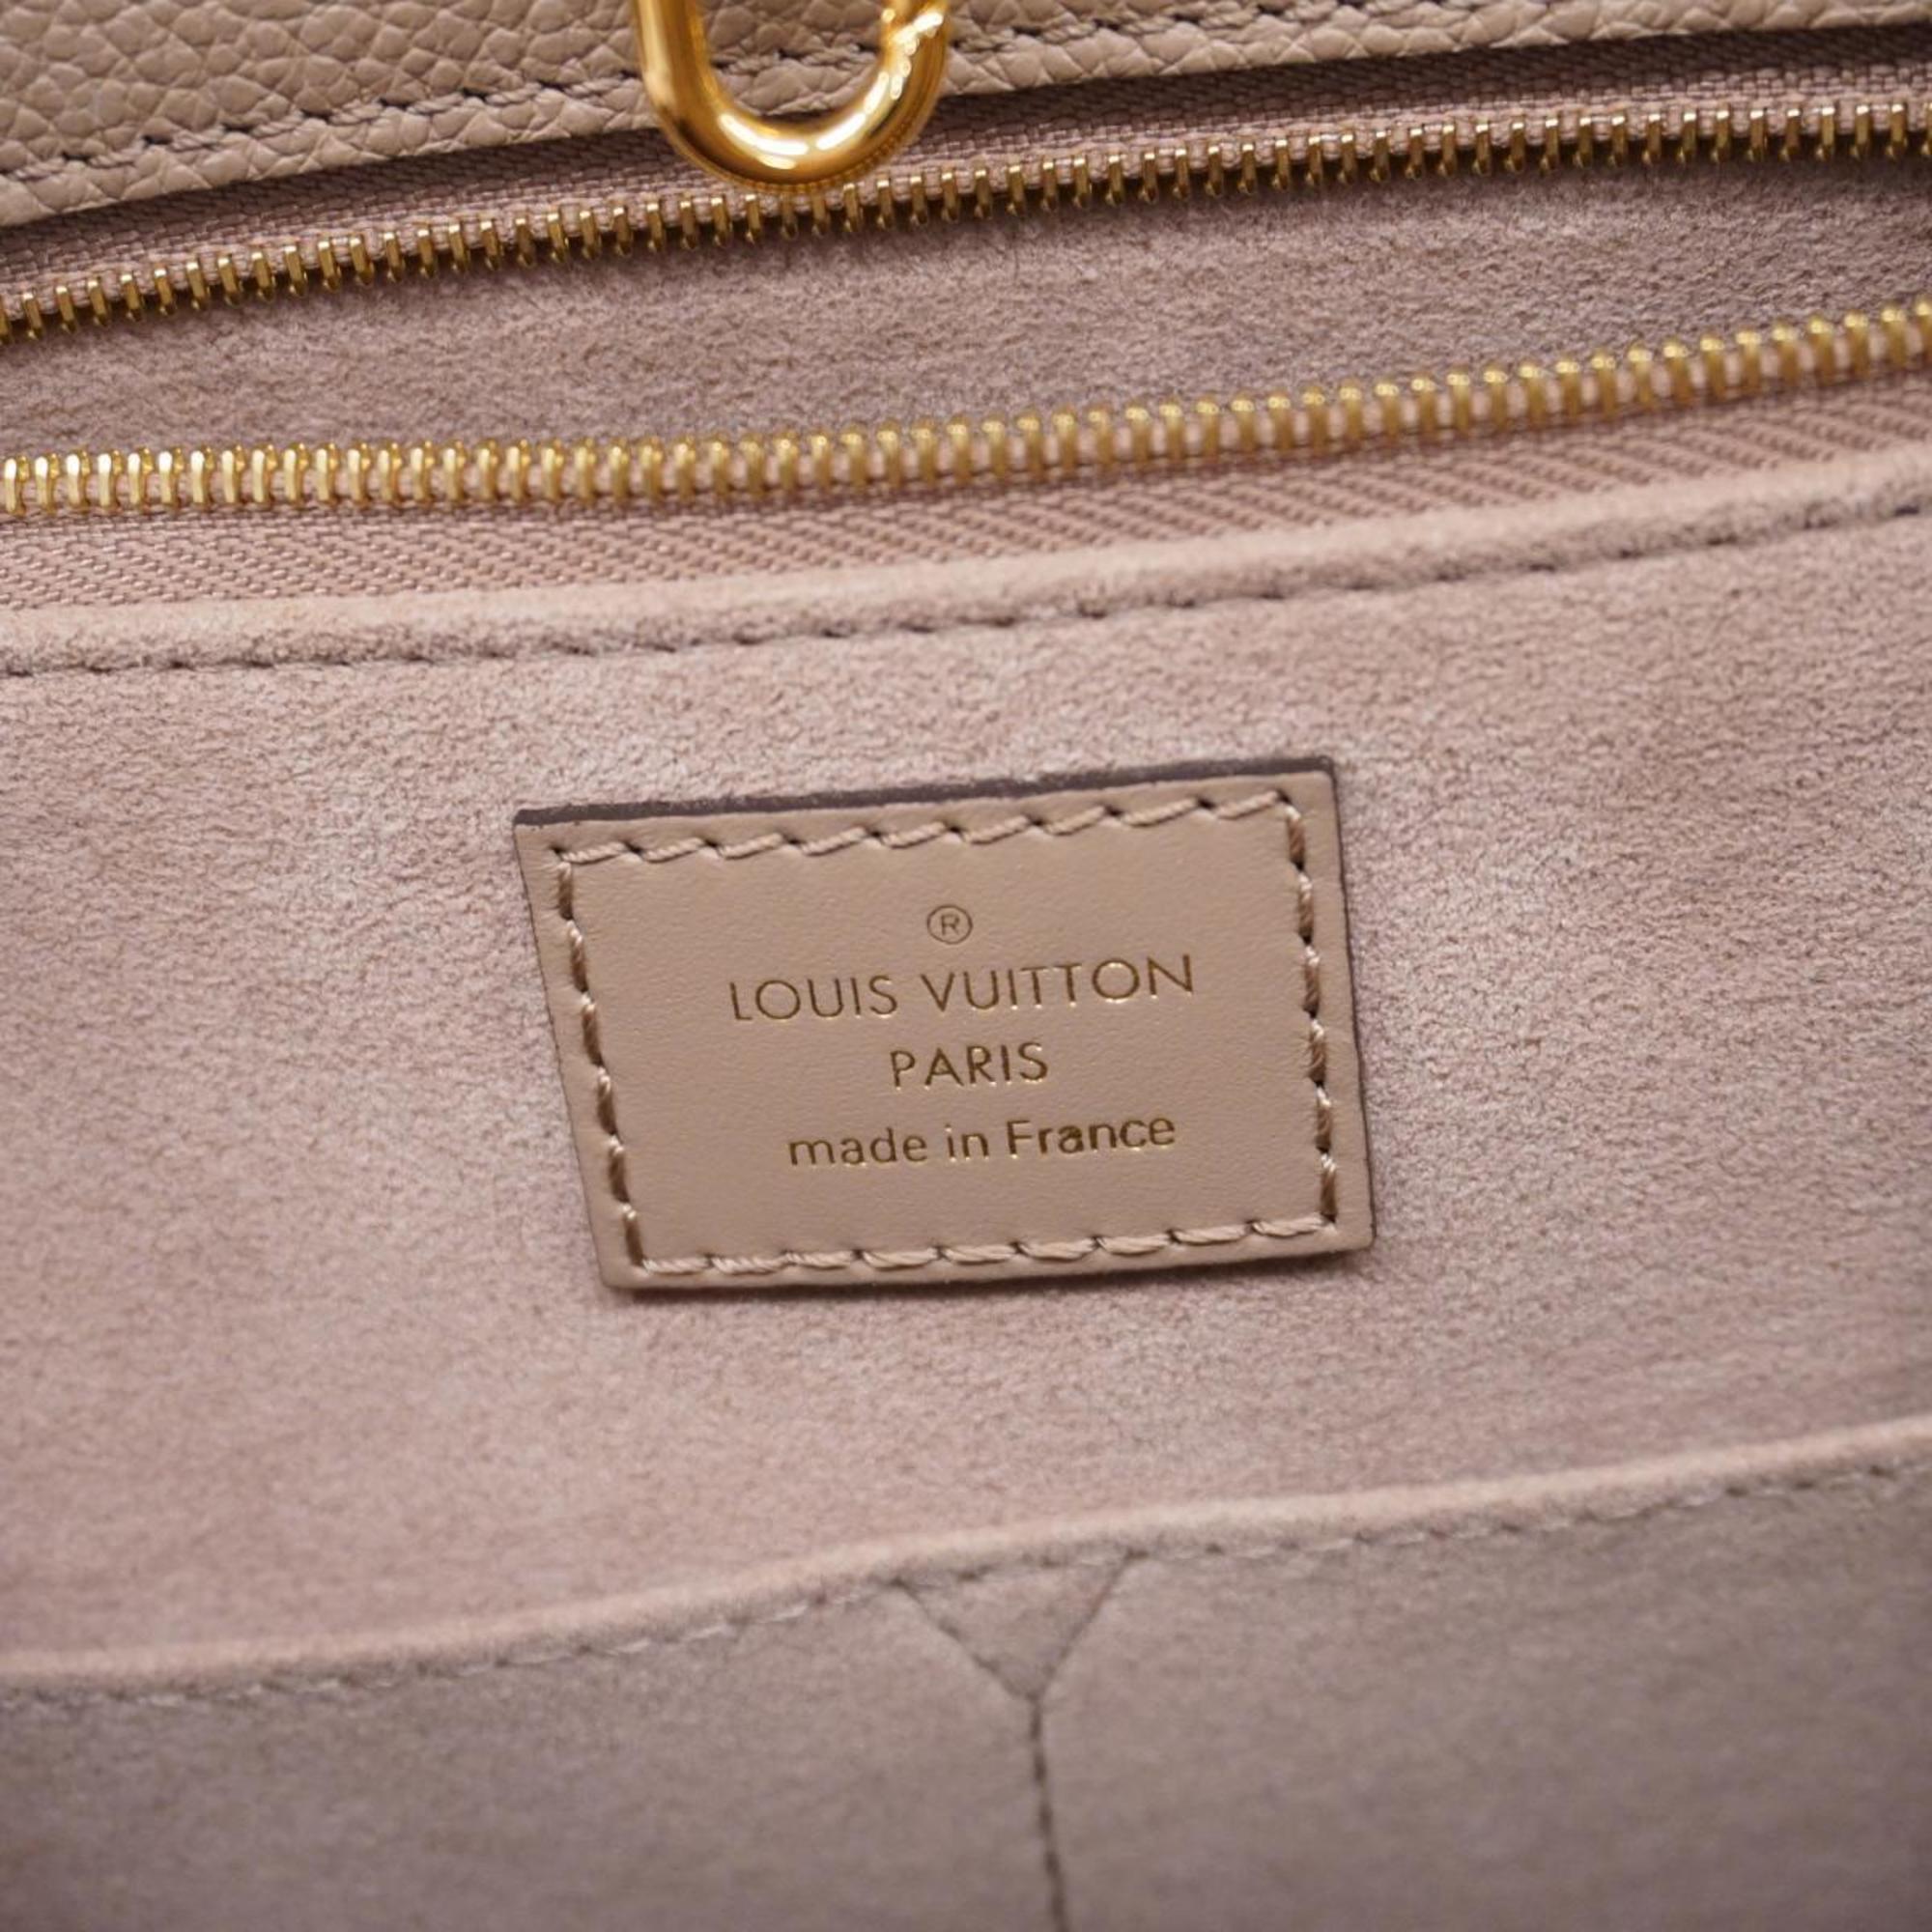 ルイ・ヴィトン(Louis Vuitton) ルイ・ヴィトン ハンドバッグ モノグラム・アンプラント オンザゴーMM M45607 ベージュレディース